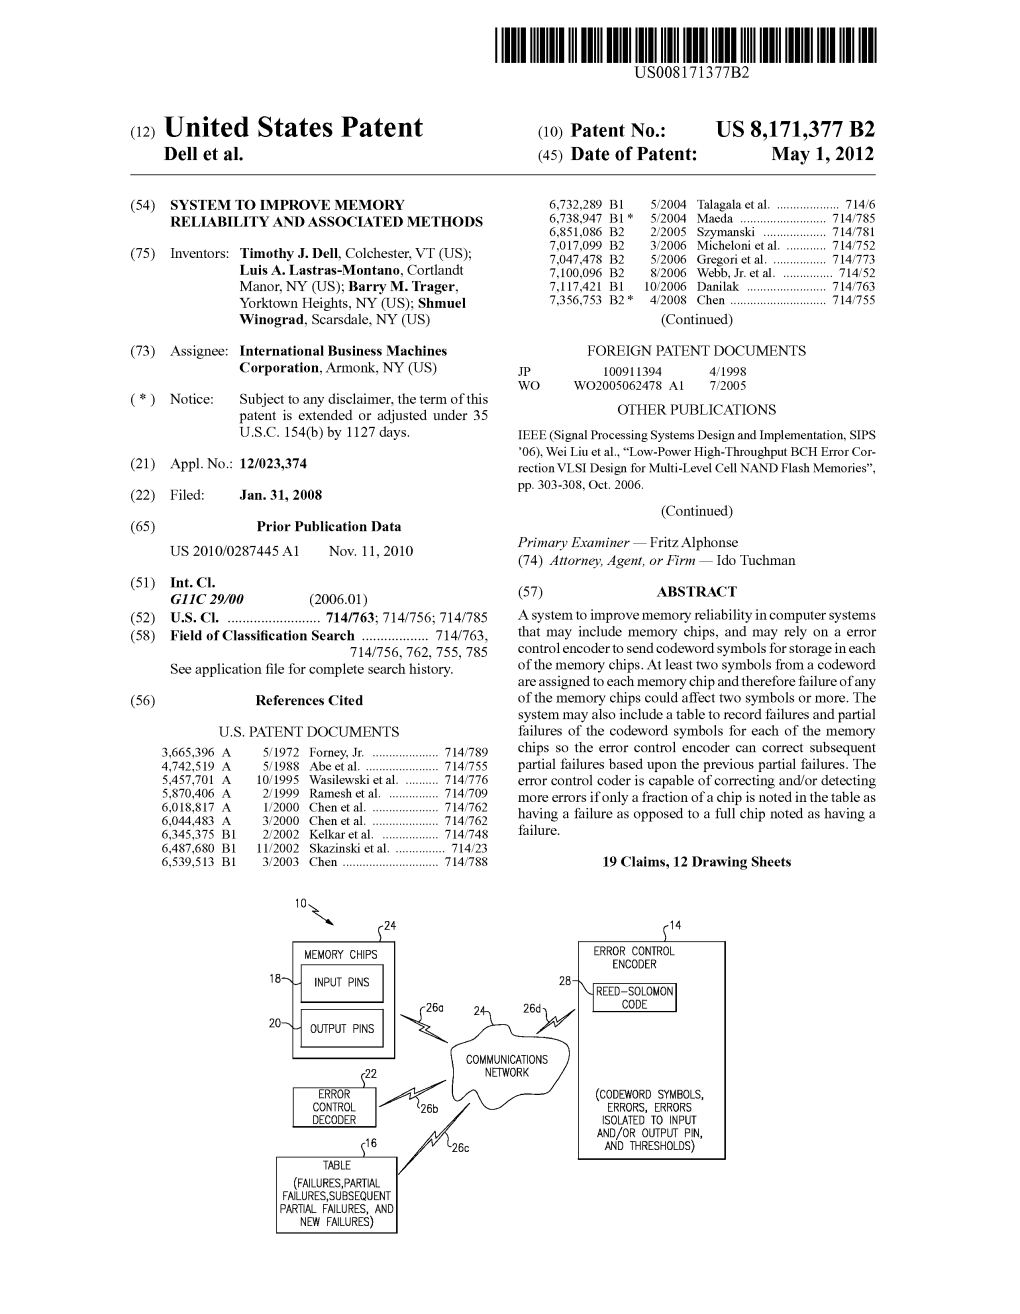 (12) United States Patent (10) Patent No.: US 8,171,377 B2 Dell Et Al